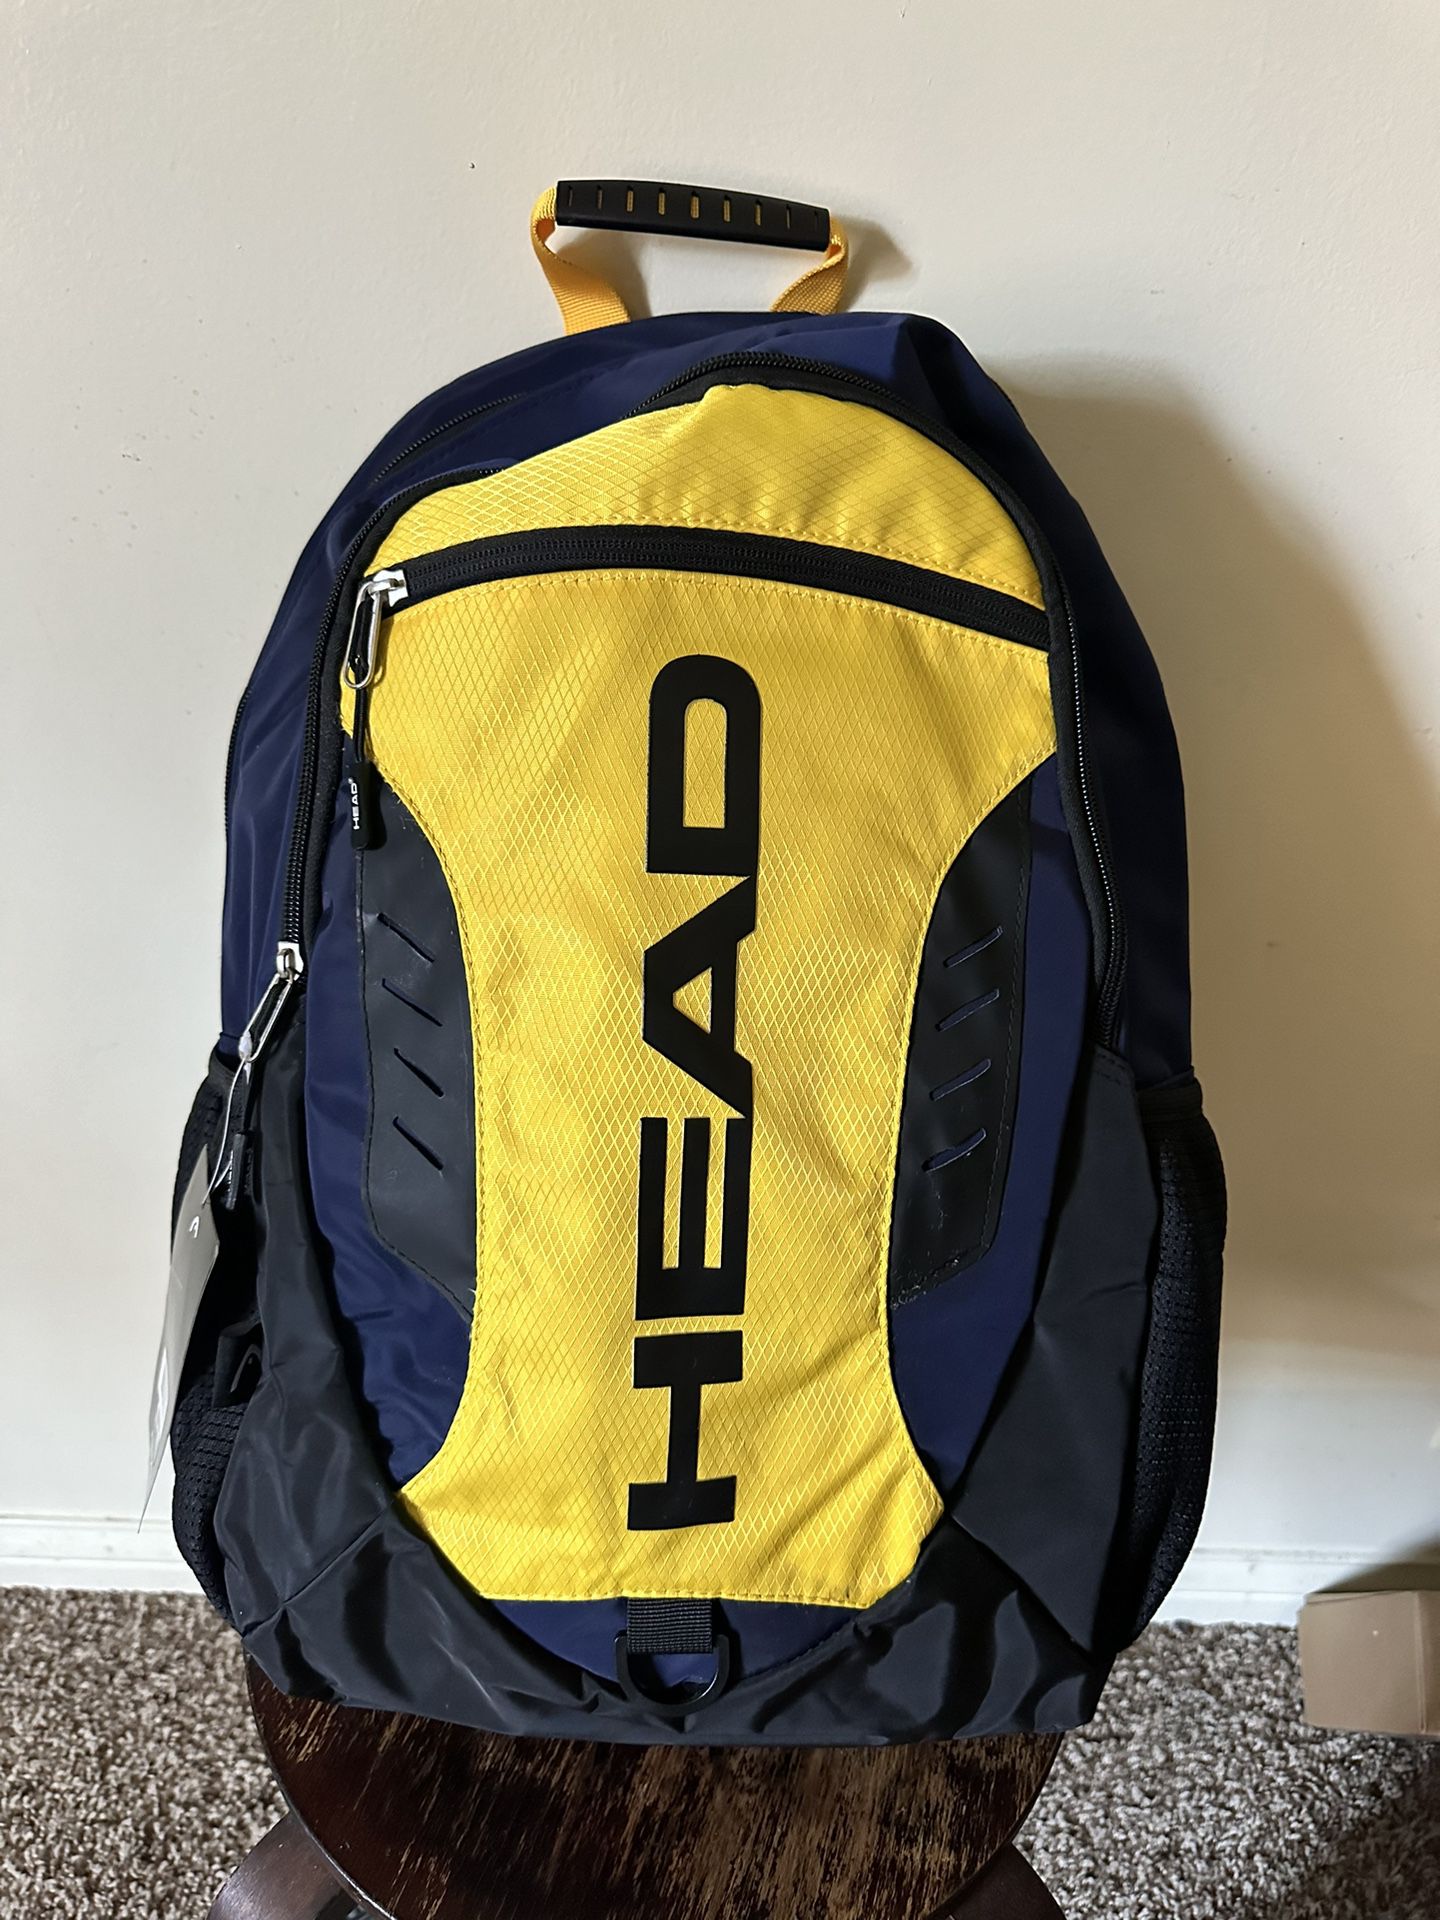 Head Backpack